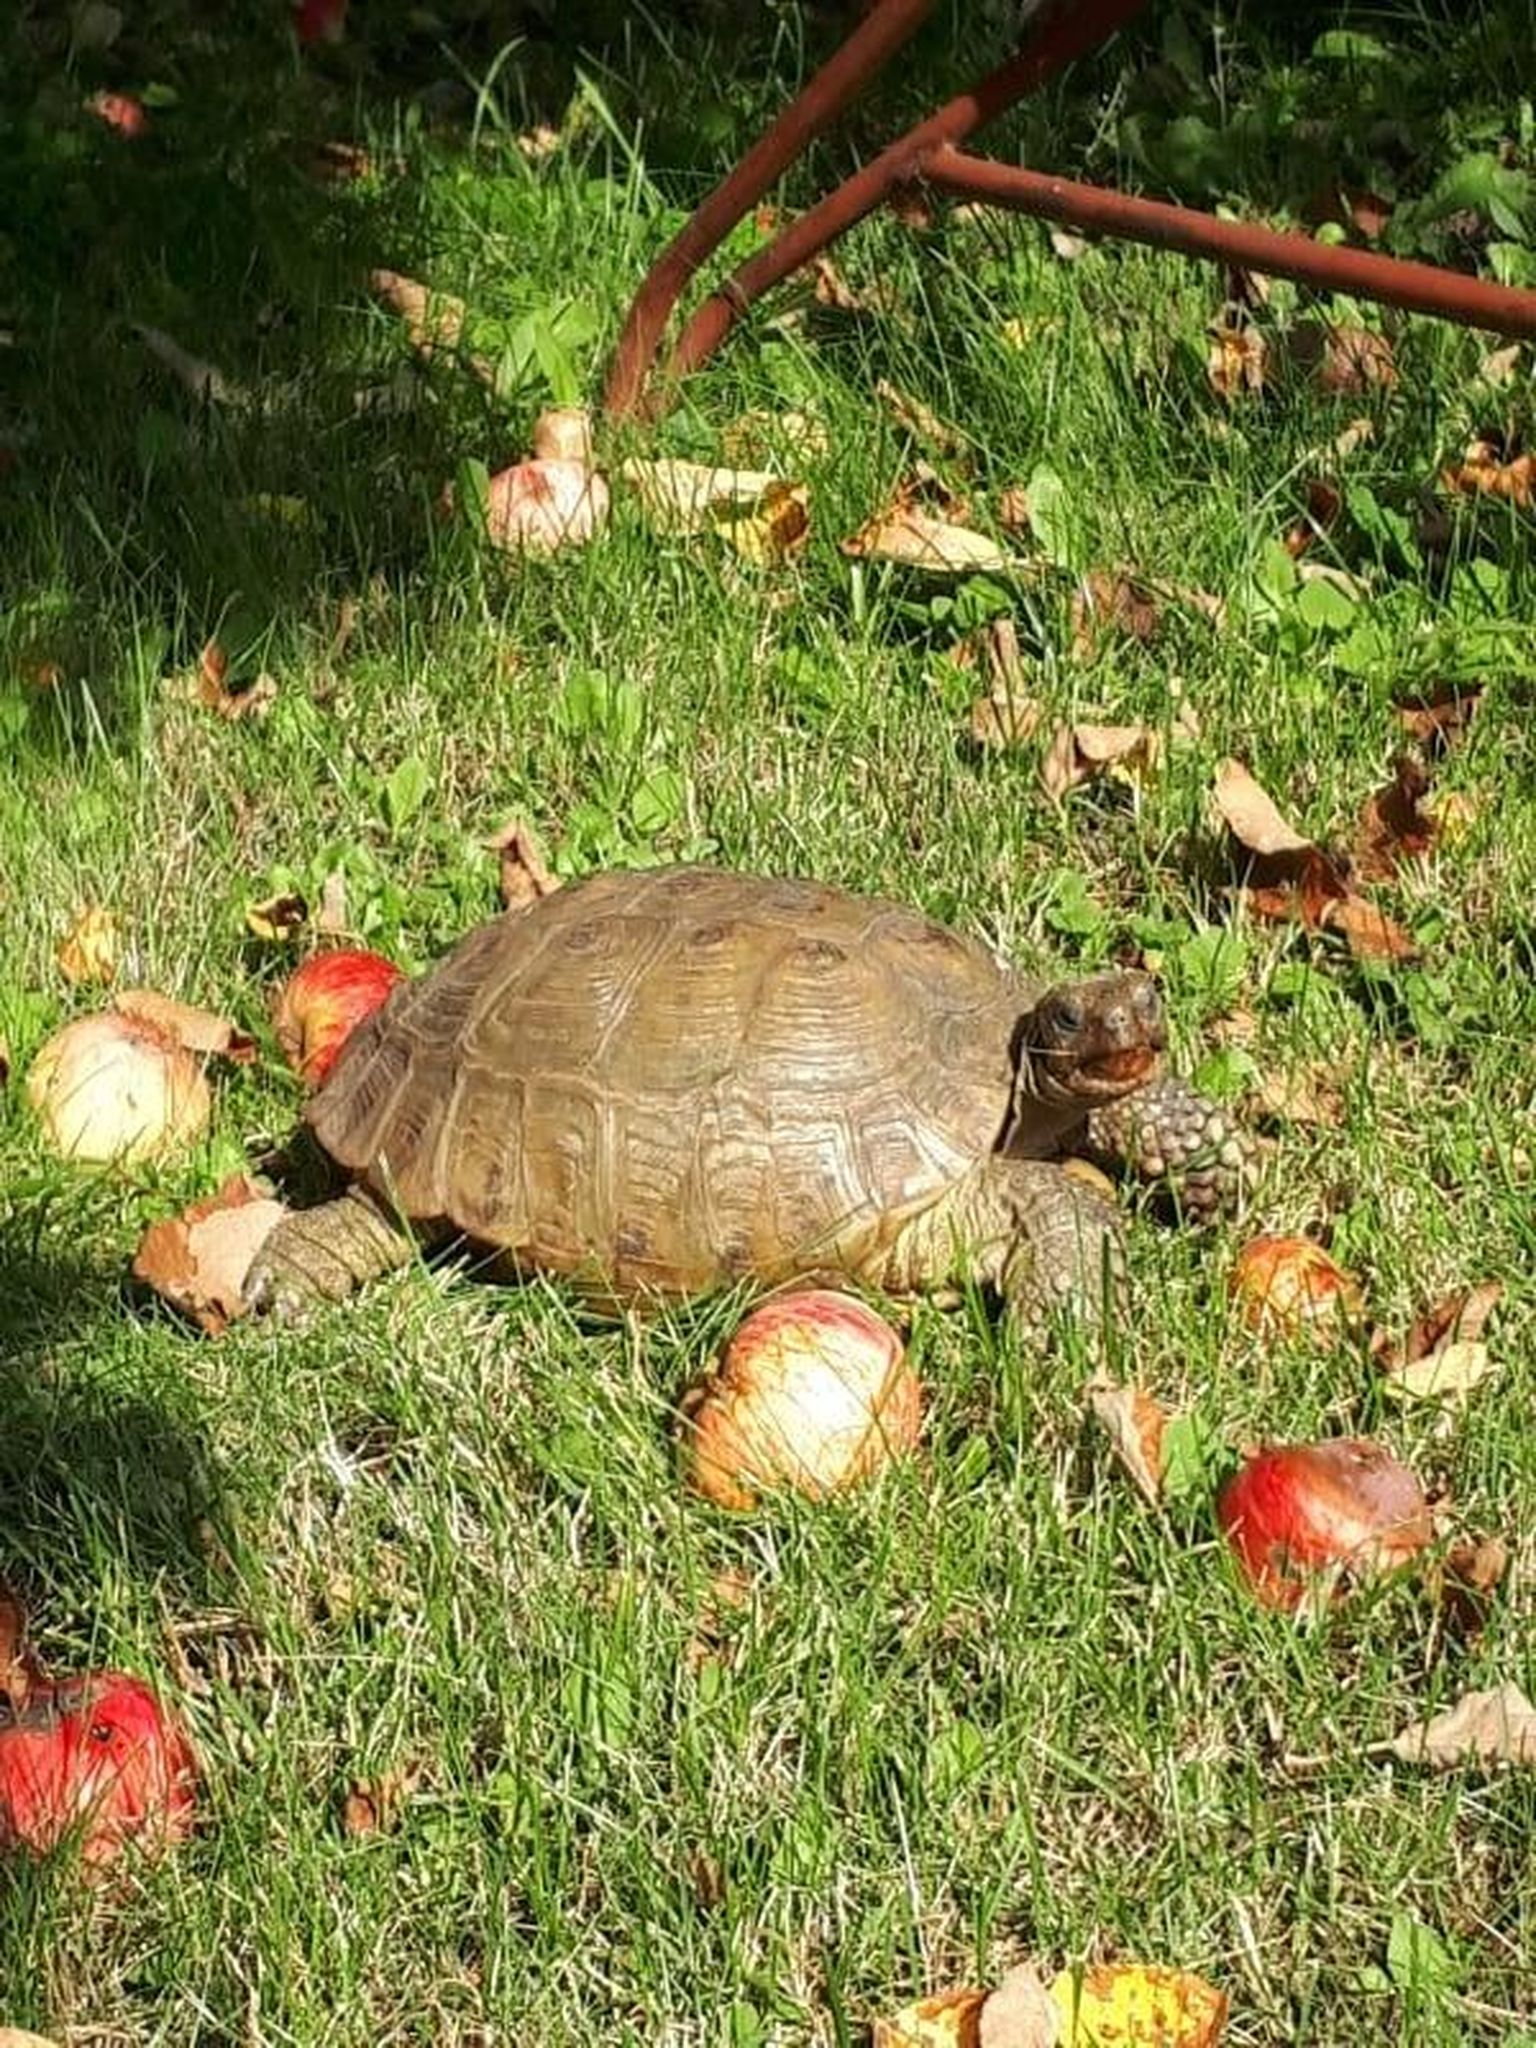 Minnes koduaeda õunu korjama, avastas Signe Kerge sealt kilpkonna, kes parajasti usinalt õuna nosis.